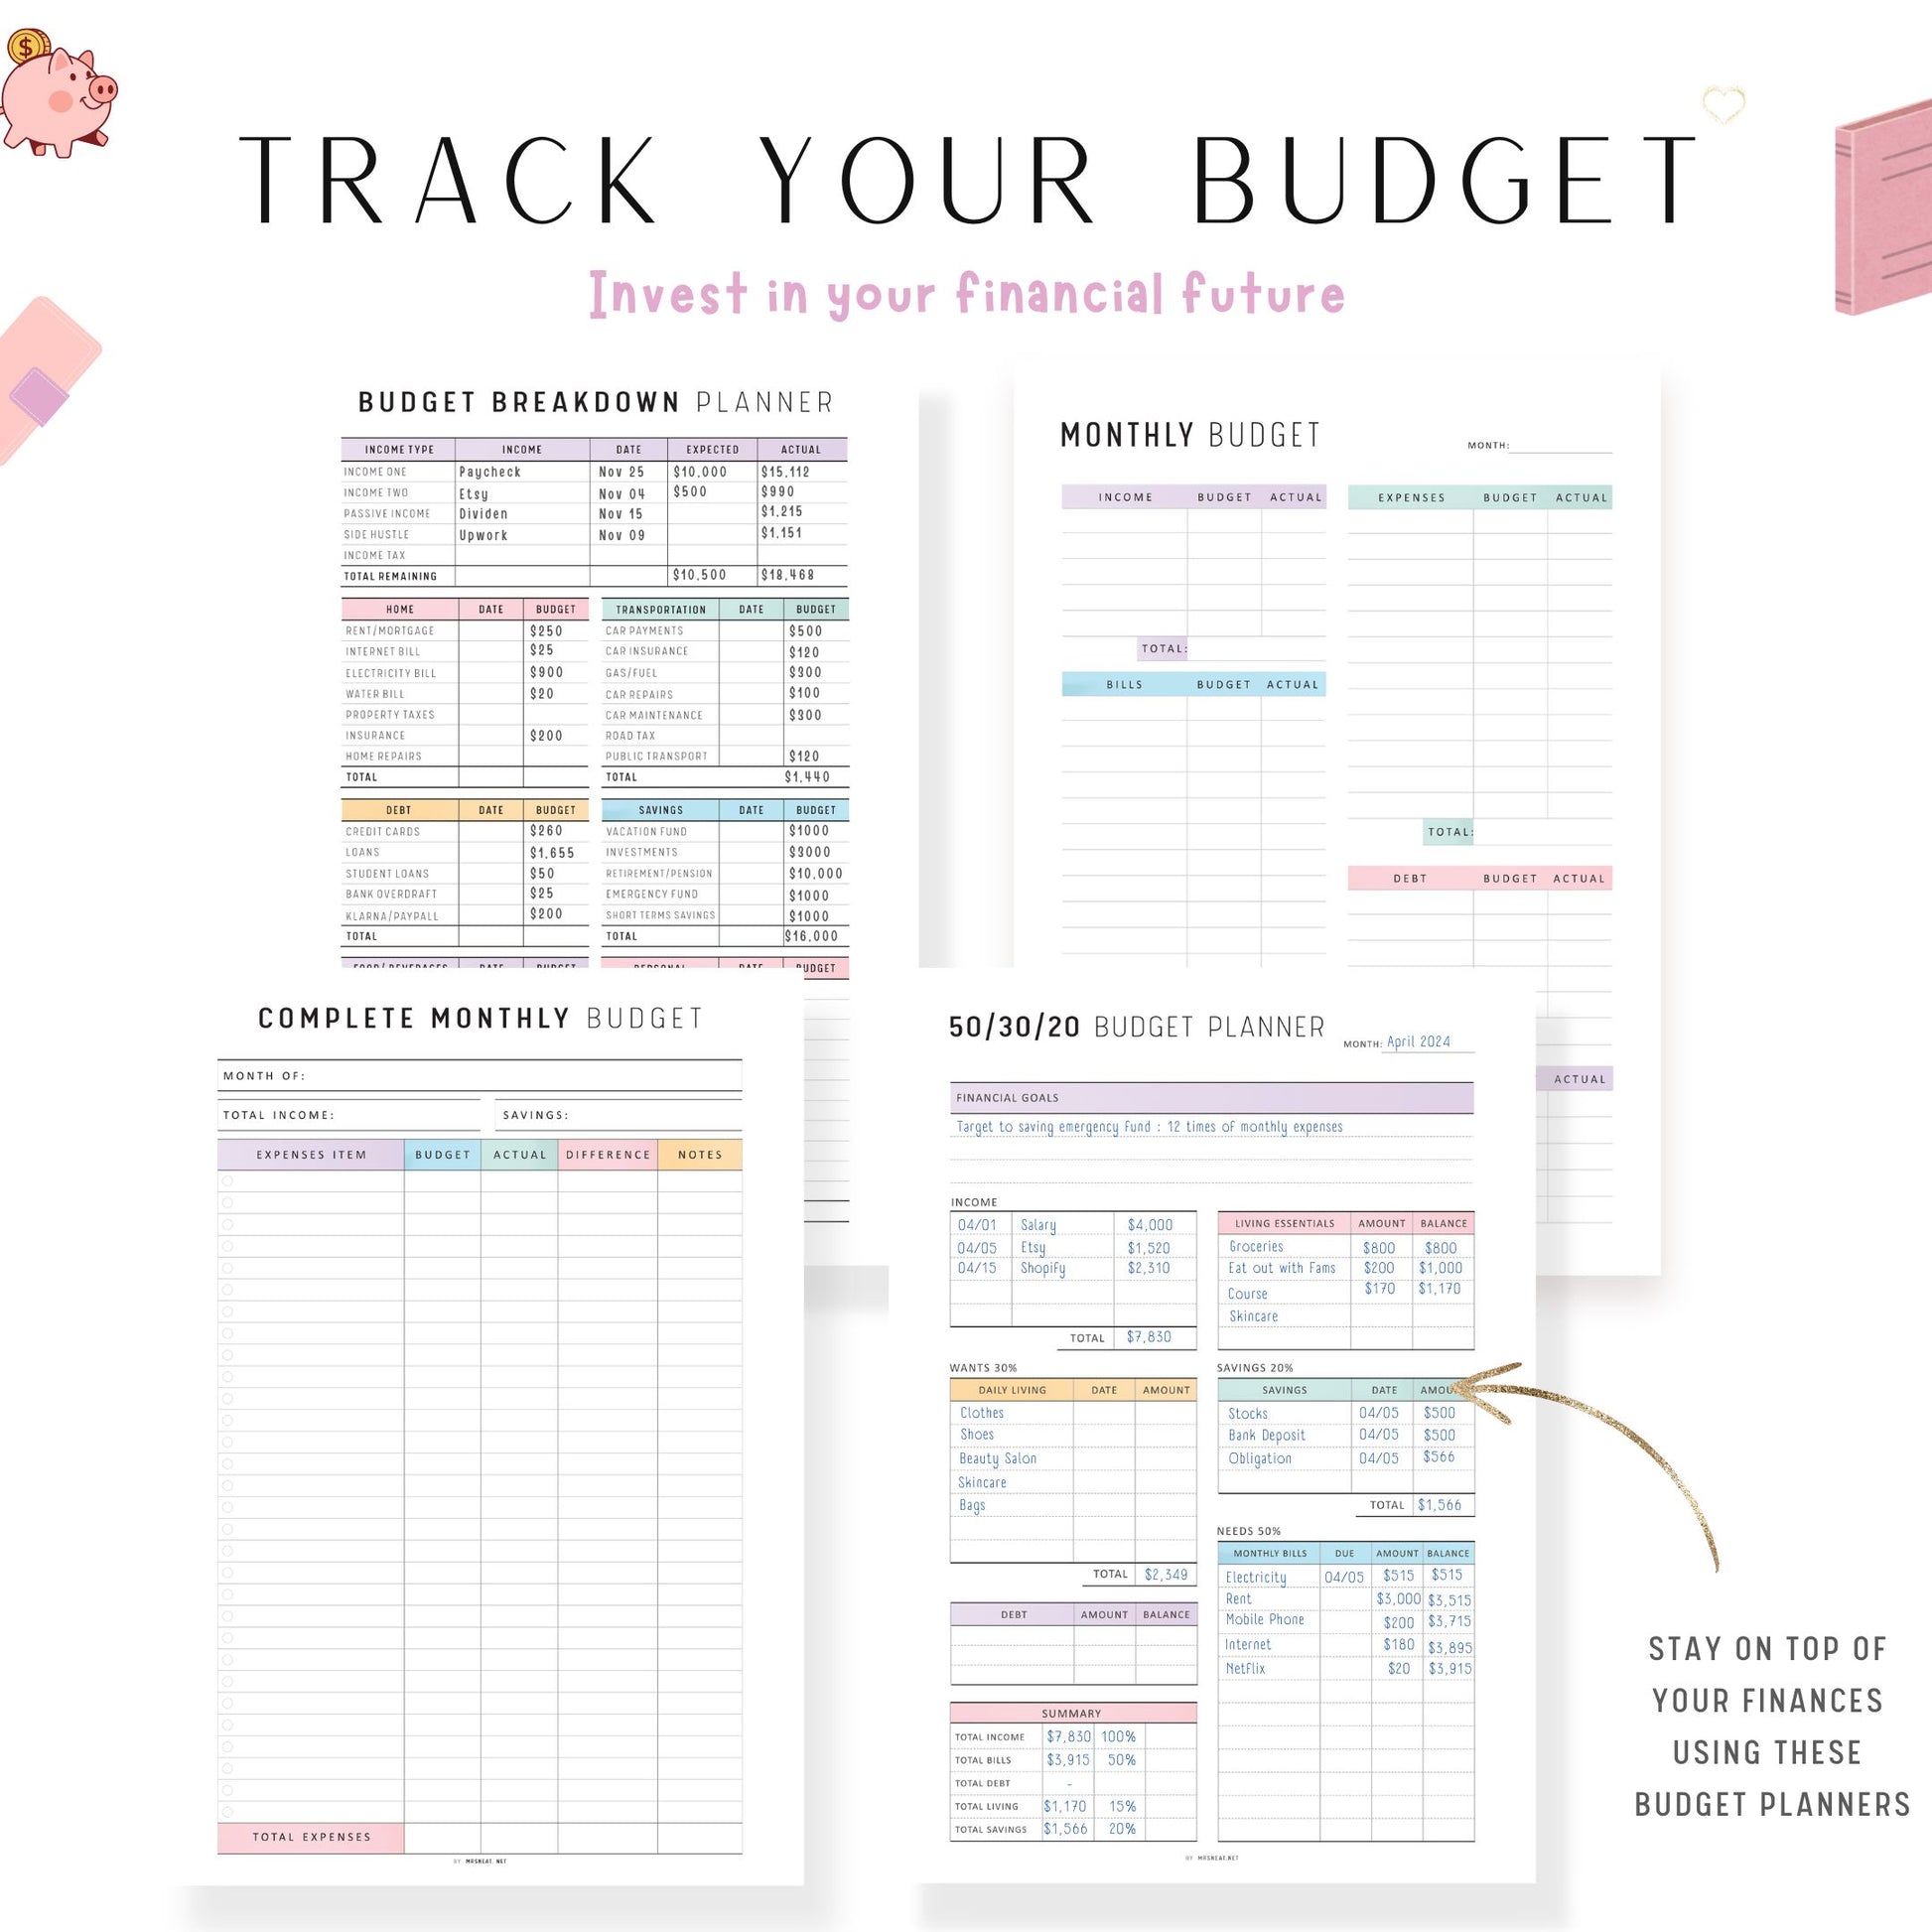 Financial Planner Bundle, Budget Binder, Printable, A4, A5, Letter, Half Letter, 2 Colors, Digital Planner, PDF